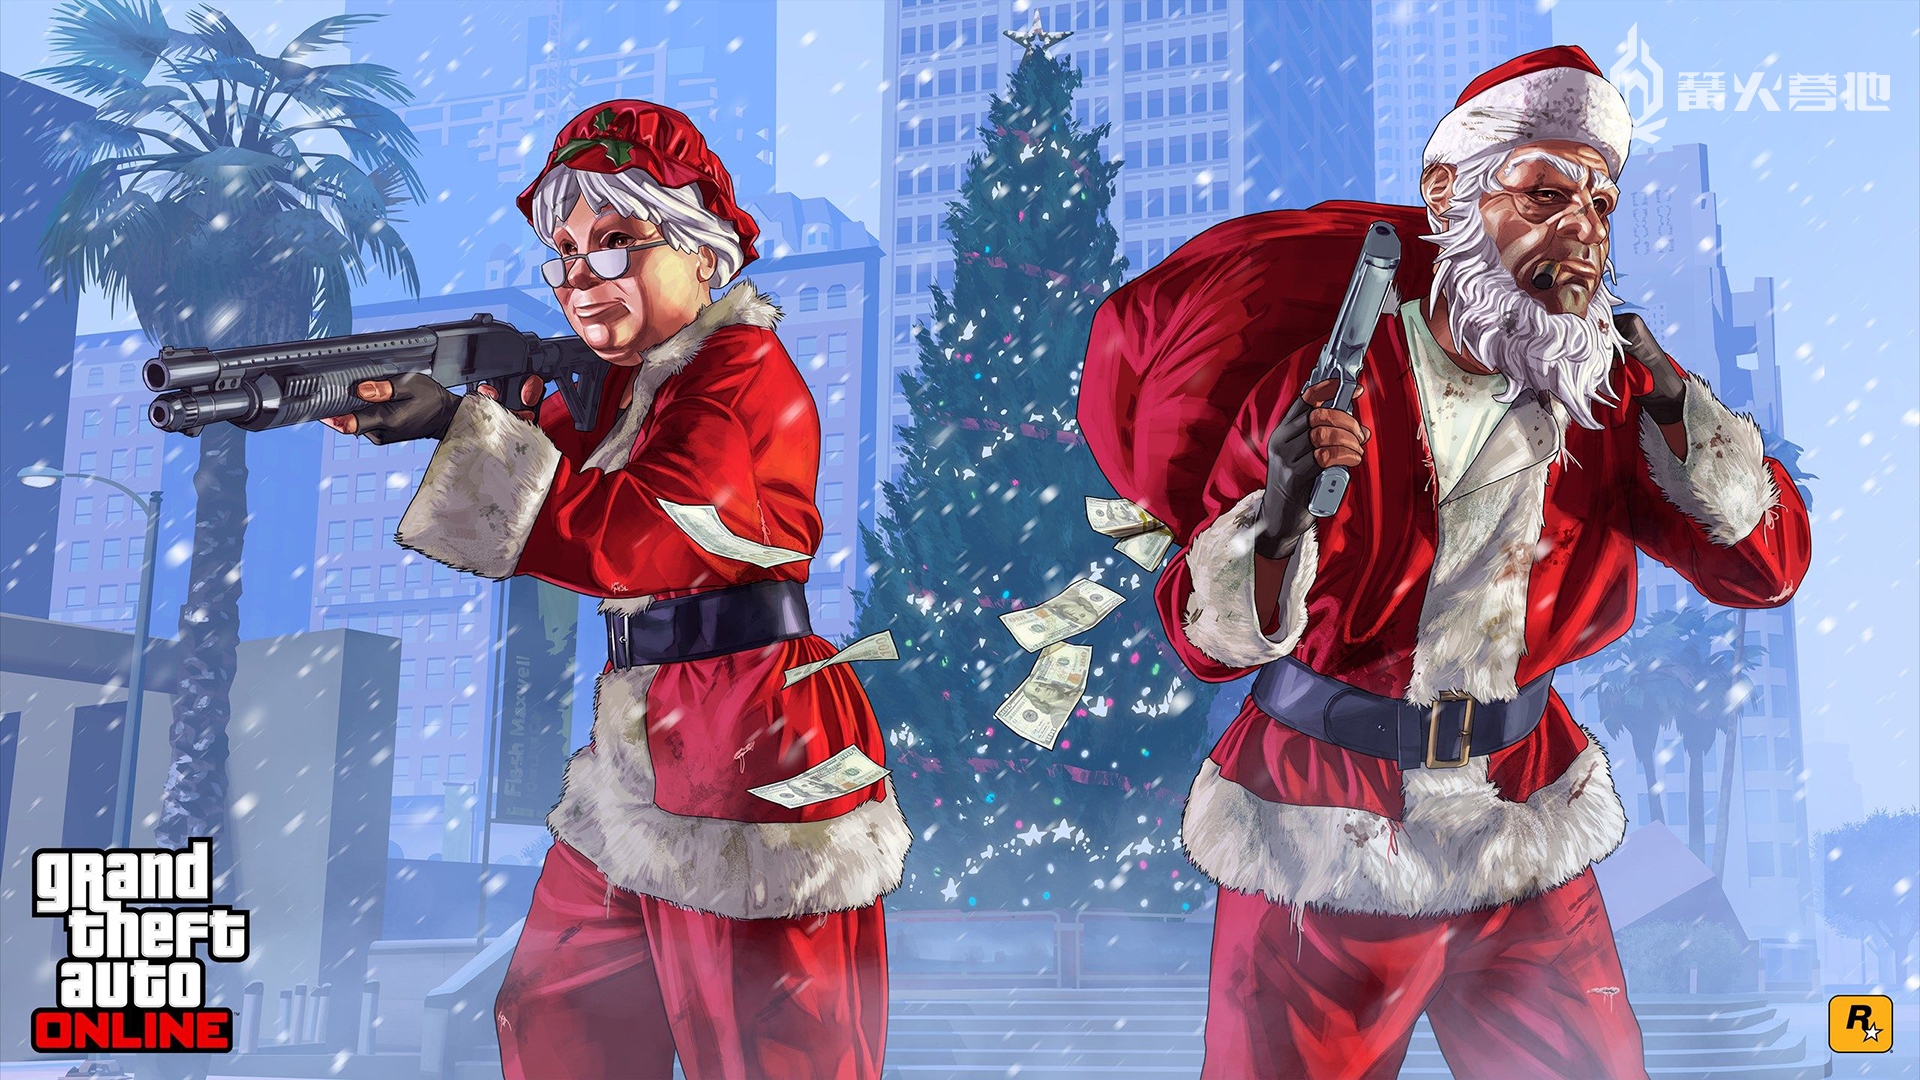 《GTA5》成为欧洲等地区圣诞节期间下载次数最多的游戏 2%title%